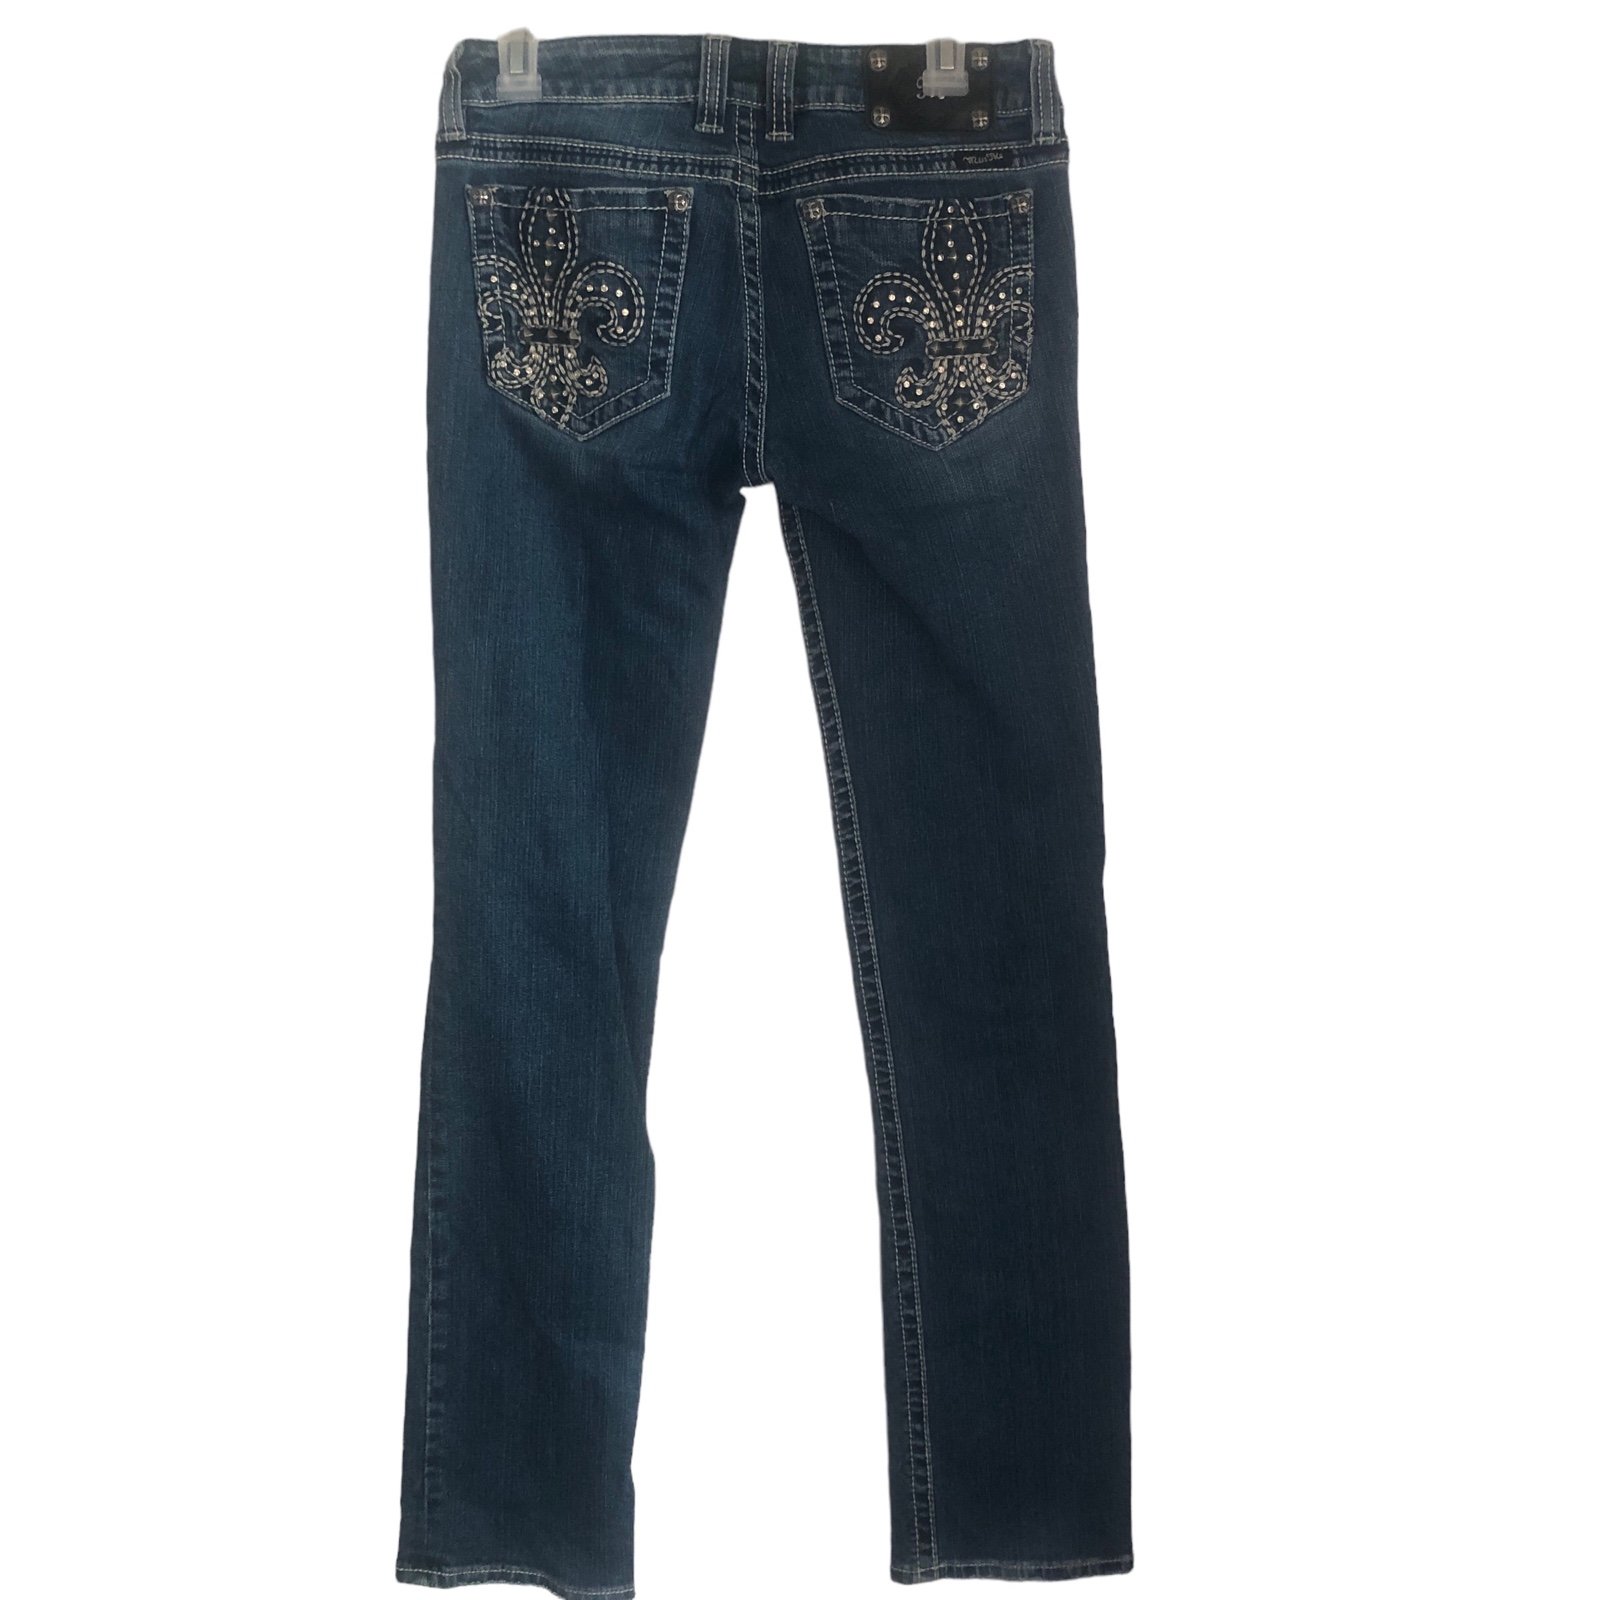 Cheap Miss Me Thick Stitch Jeans Straight Fleur de Lis Pockets S13 JNxDlUMmC on sale